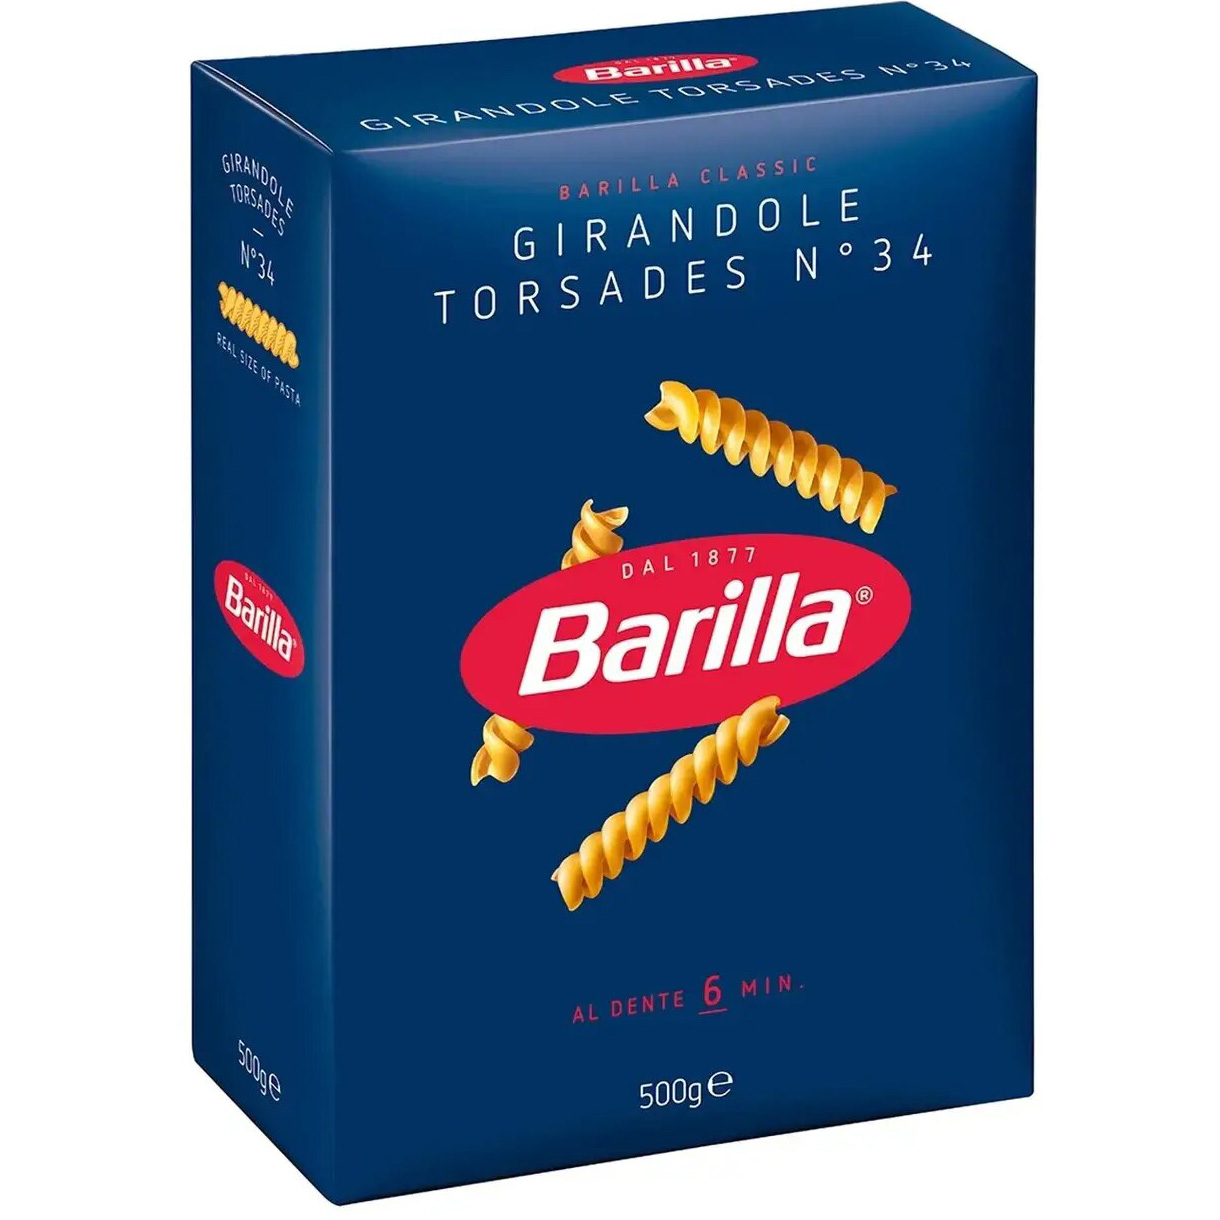 Макаронные изделия Barilla Girandole Torsades №34 500 г - фото 2